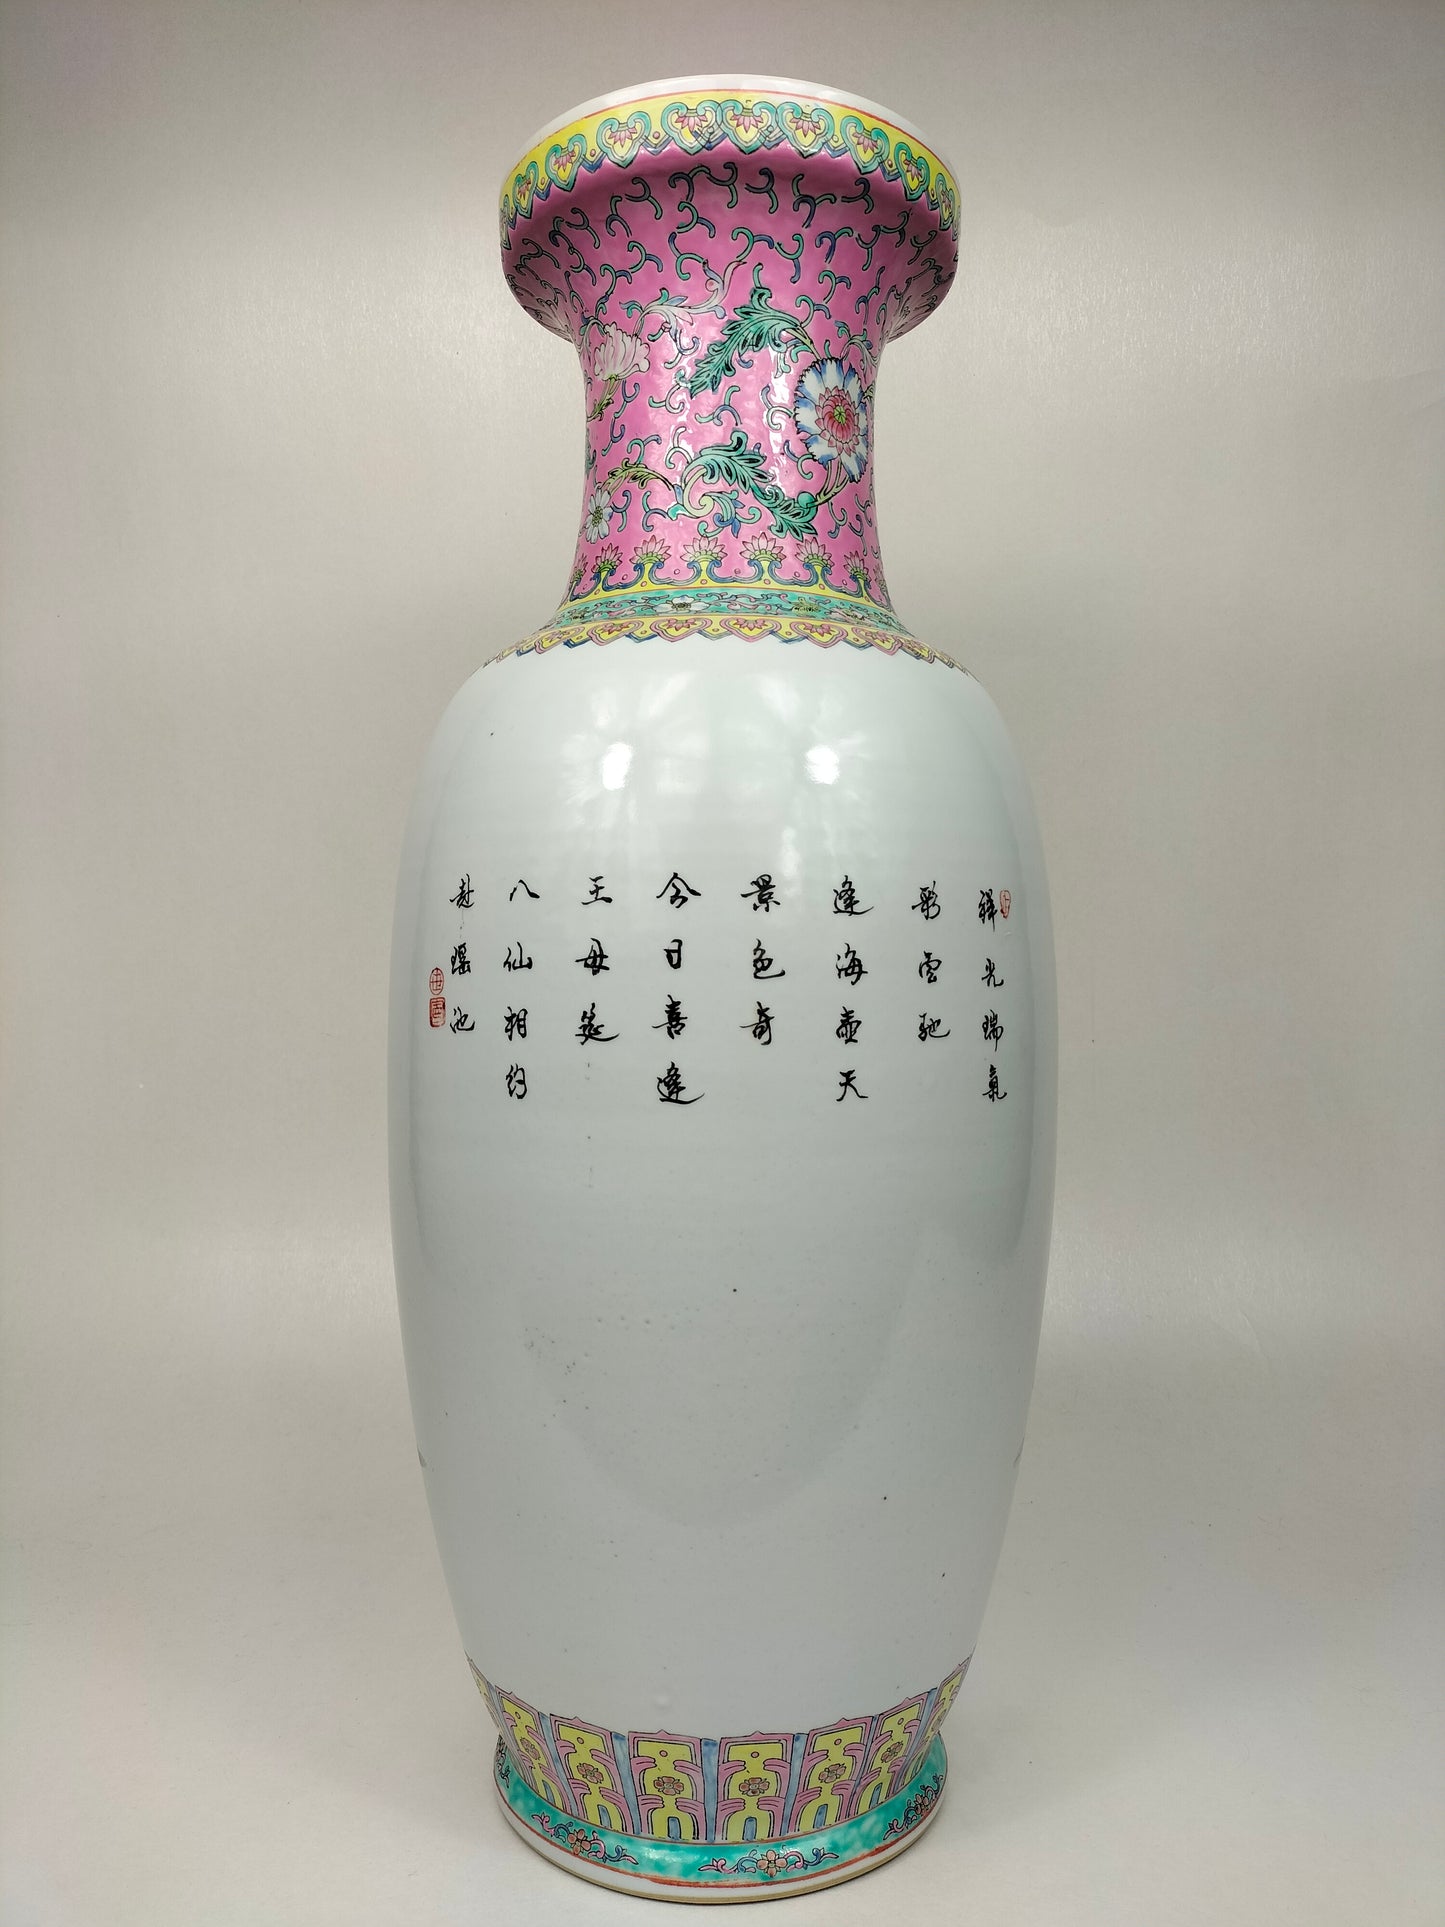 مزهرية ورد عائلية صينية كبيرة مزينة بـ 8 خالدين // جينغدتشن - القرن العشرين